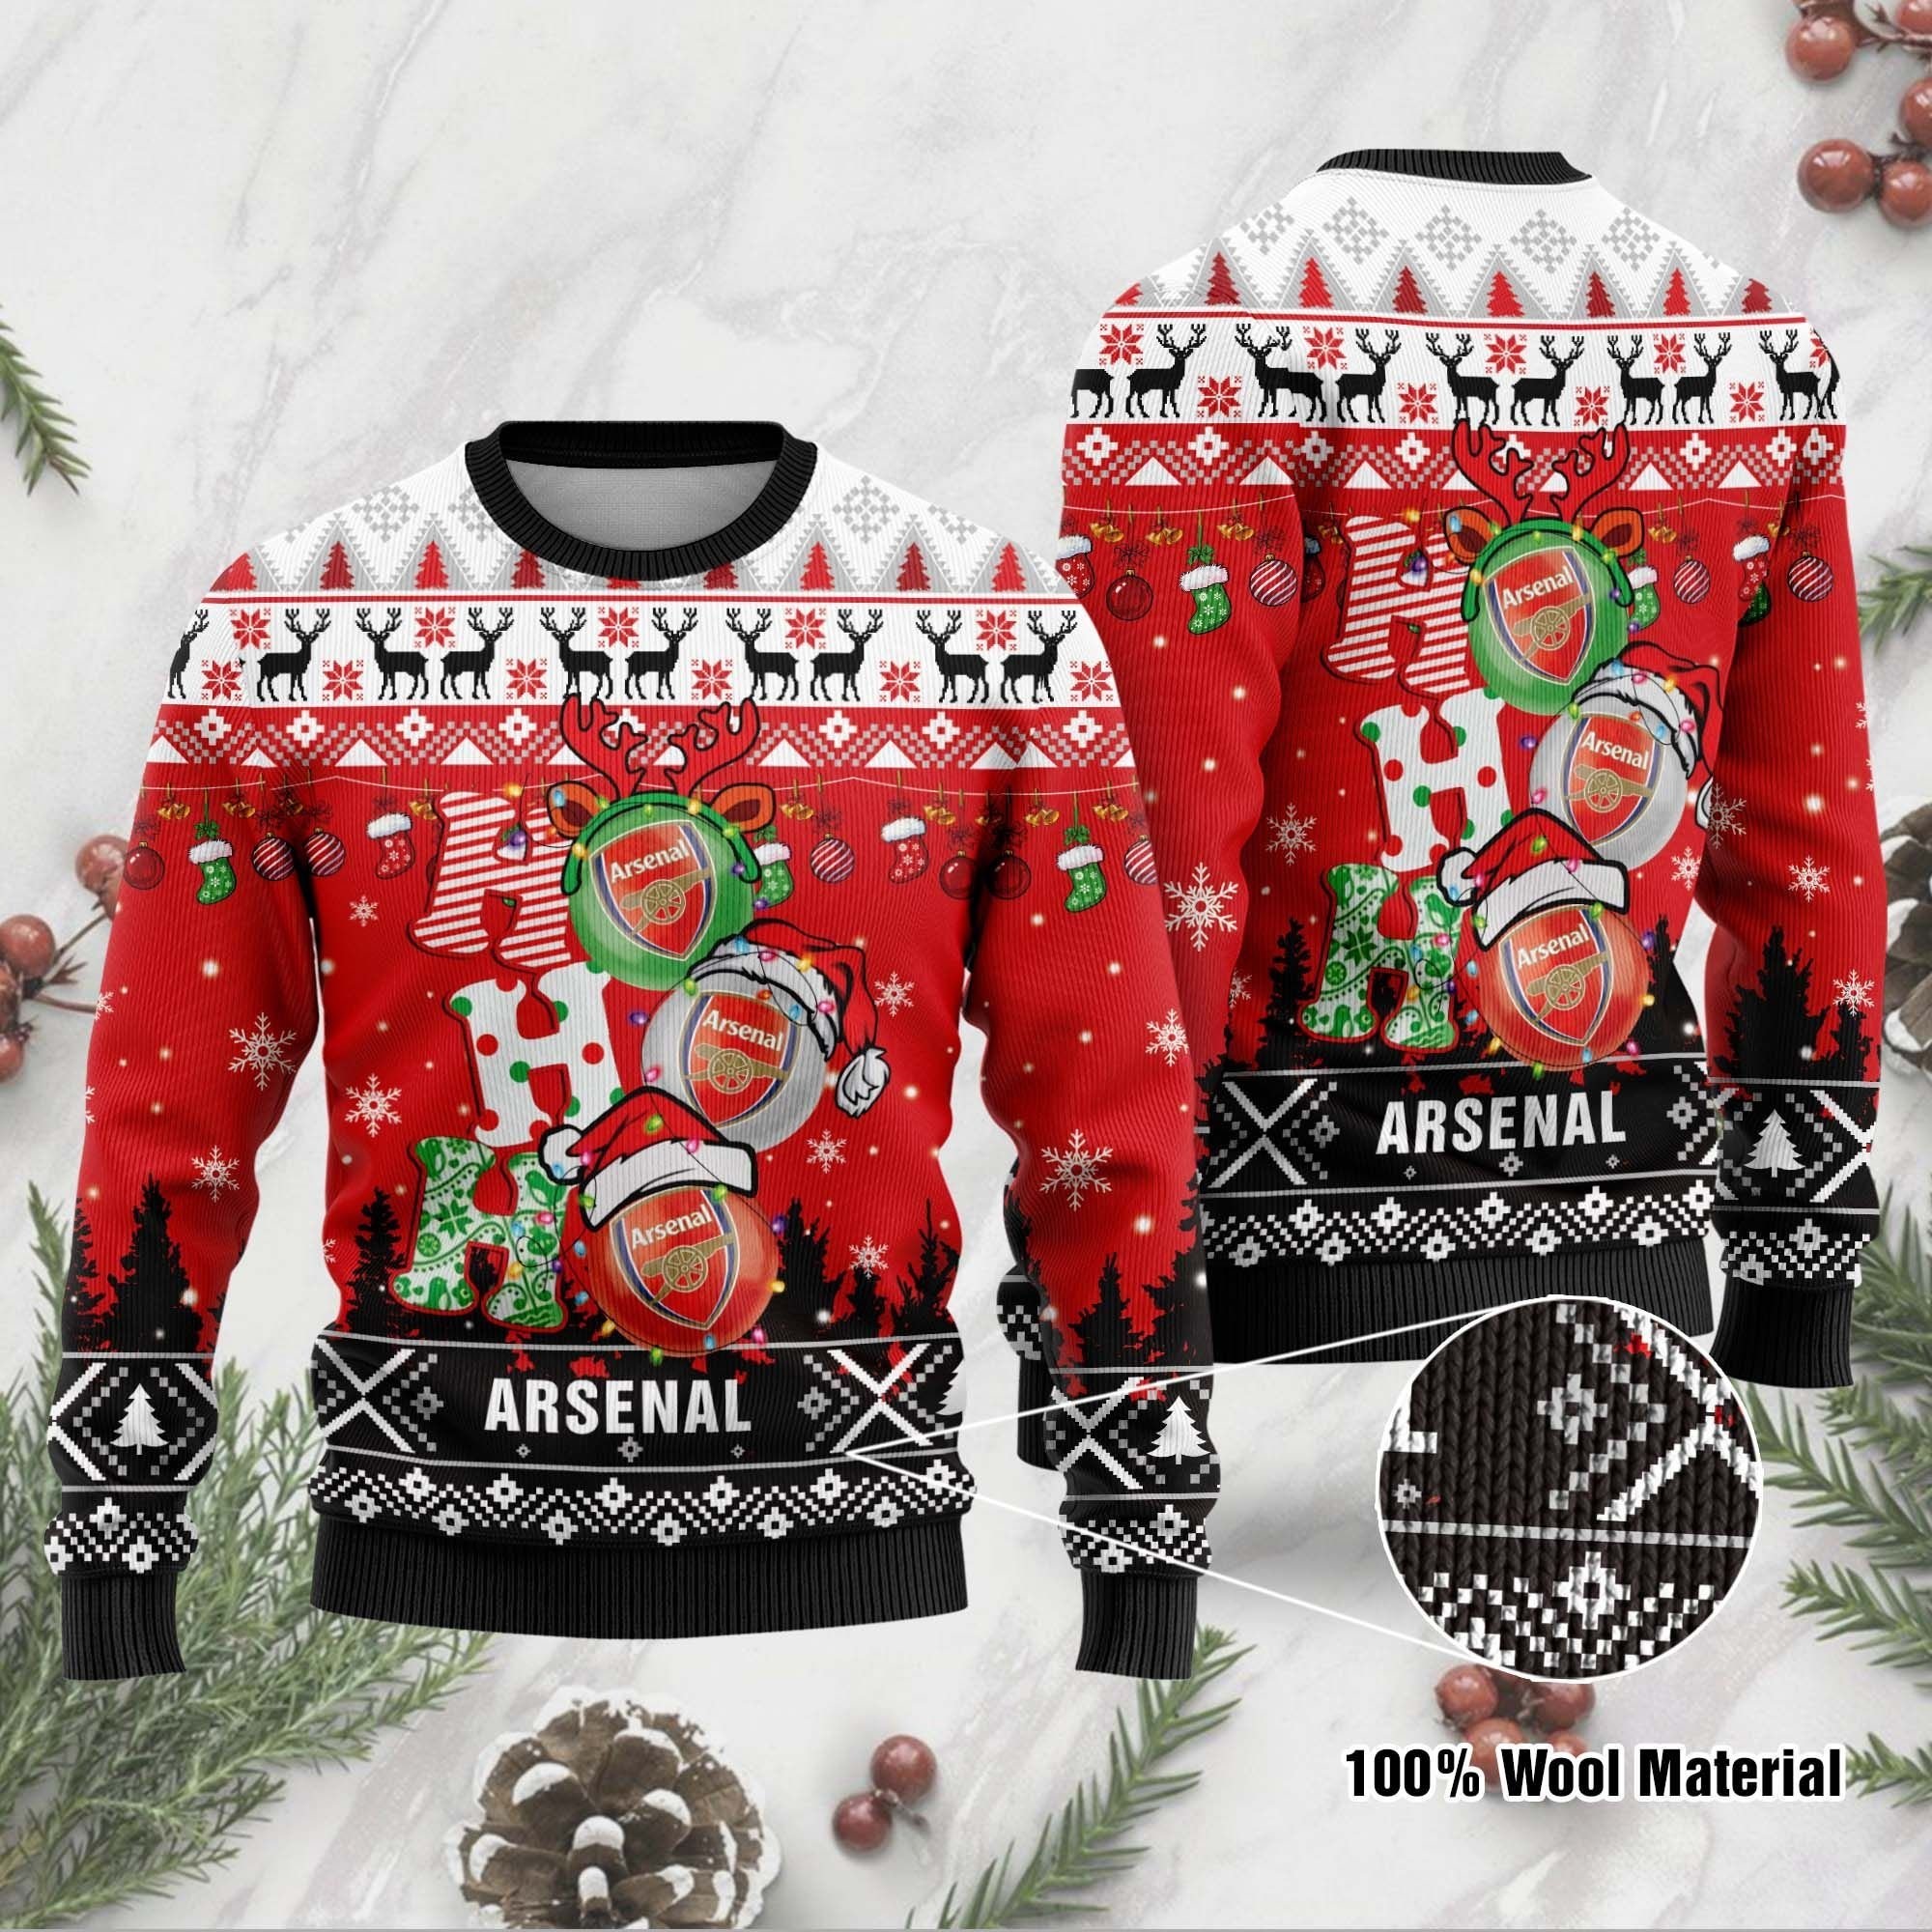 Arsenal FC Ho Ho Ho ugly christmas sweater